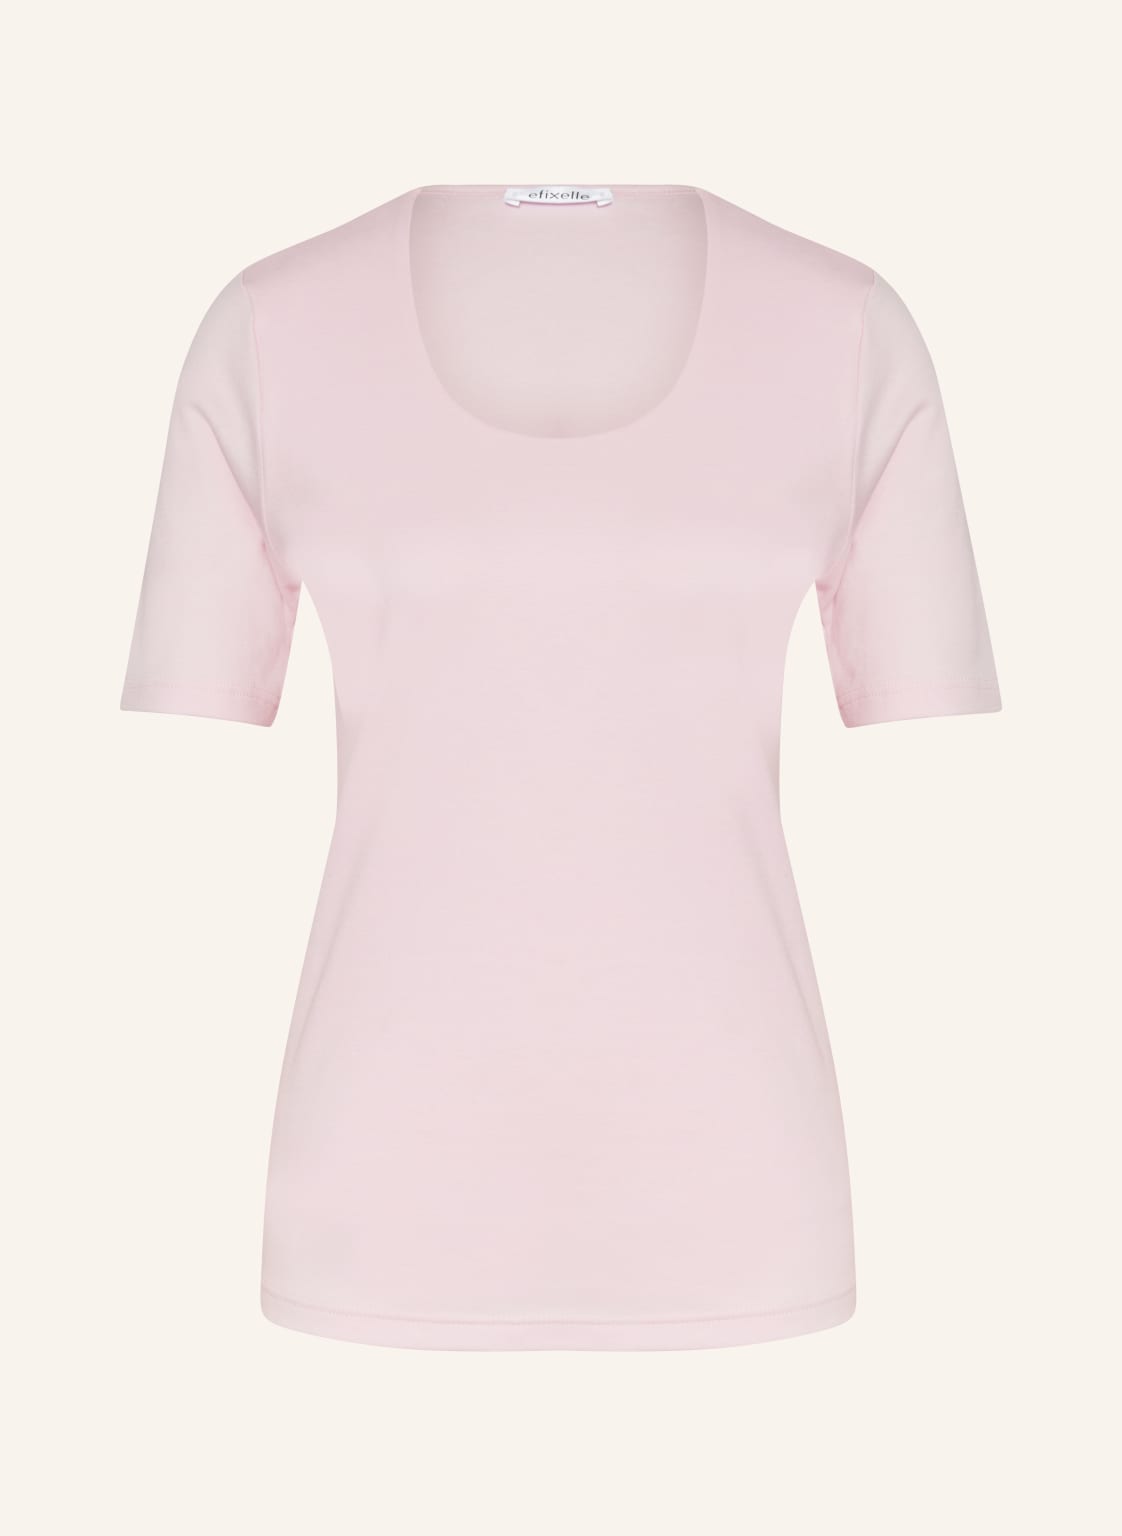 Efixelle T-Shirt rosa von efixelle